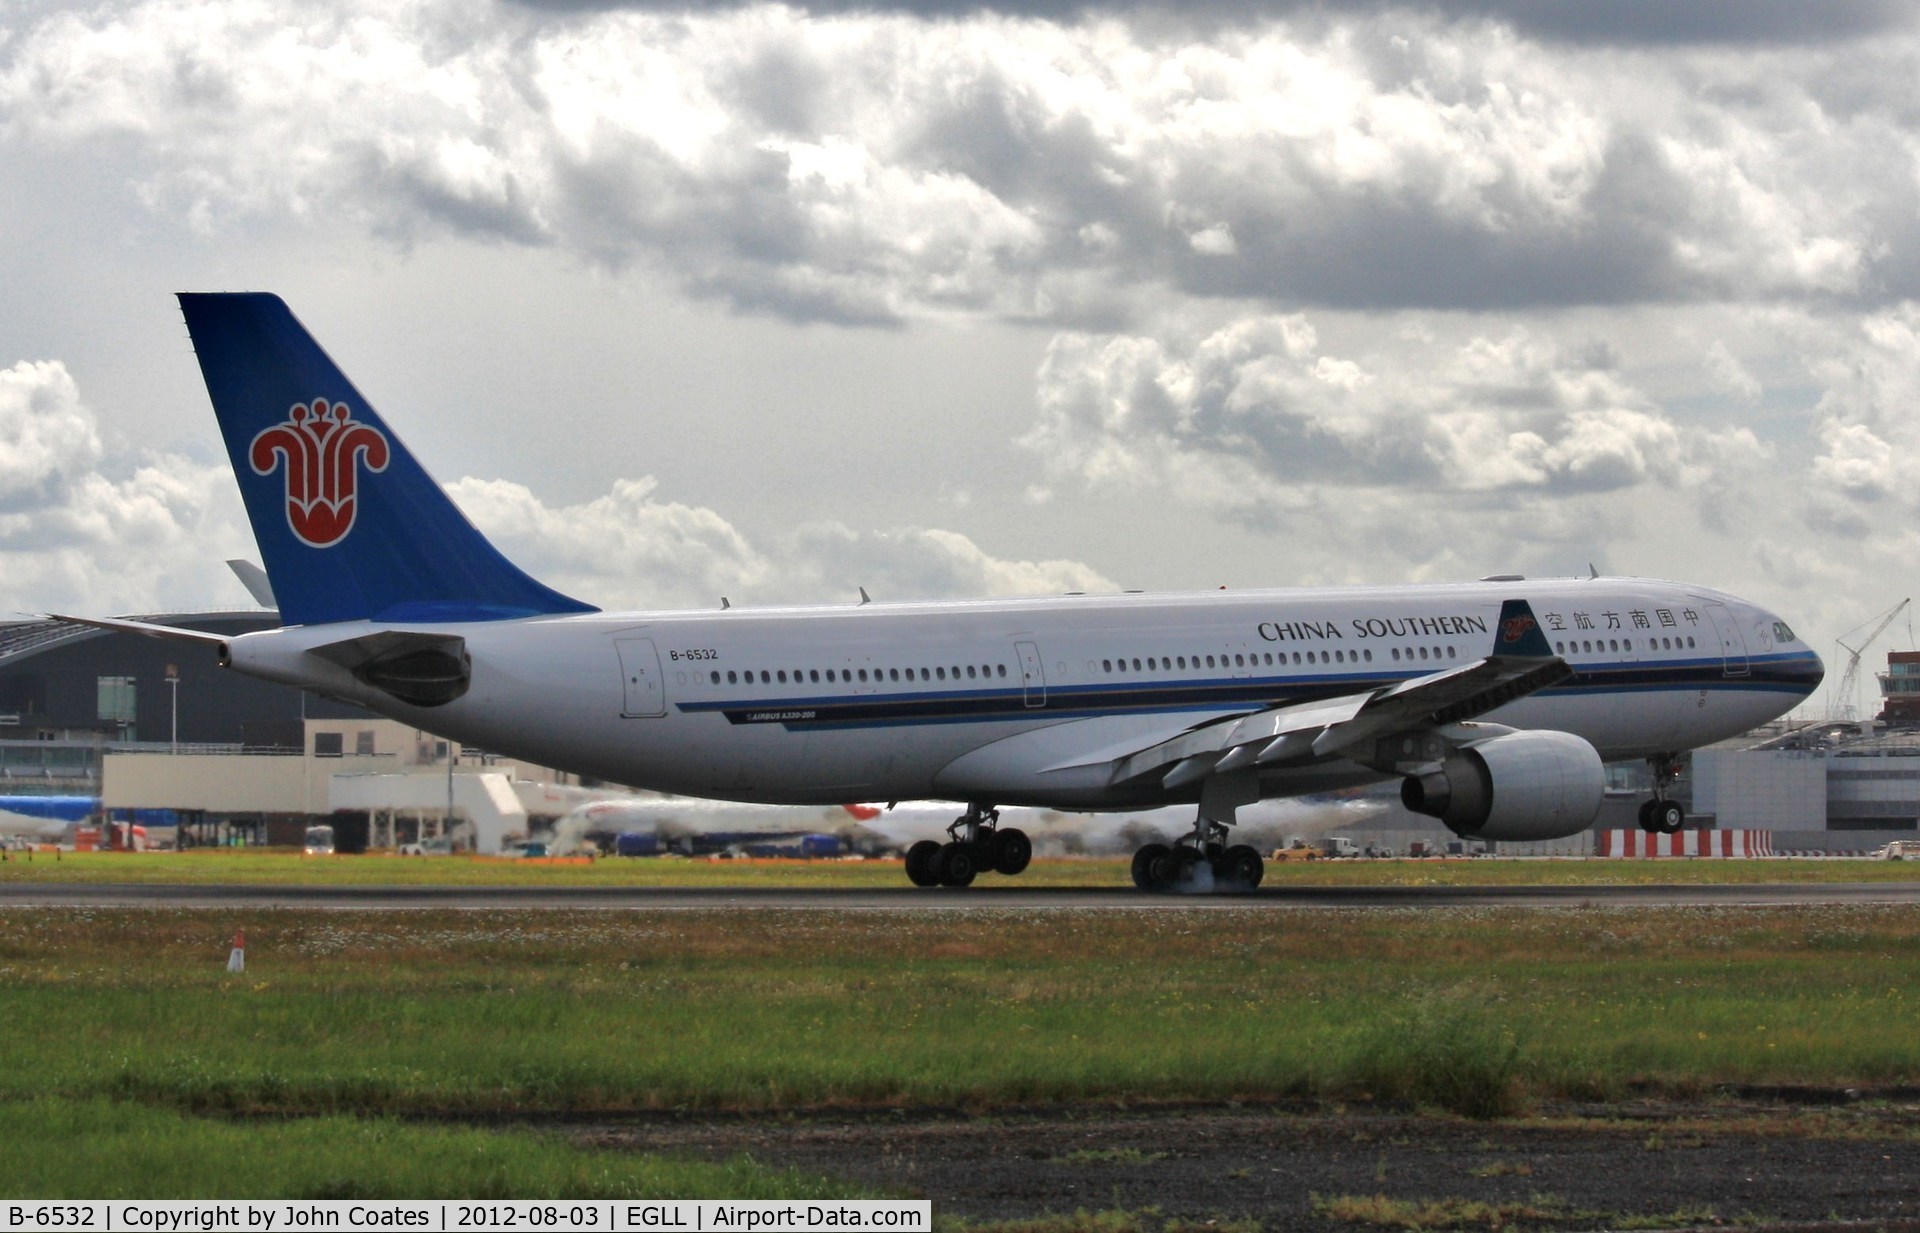 B-6532, 2011 Airbus A330-223 C/N 1244, Touchdown